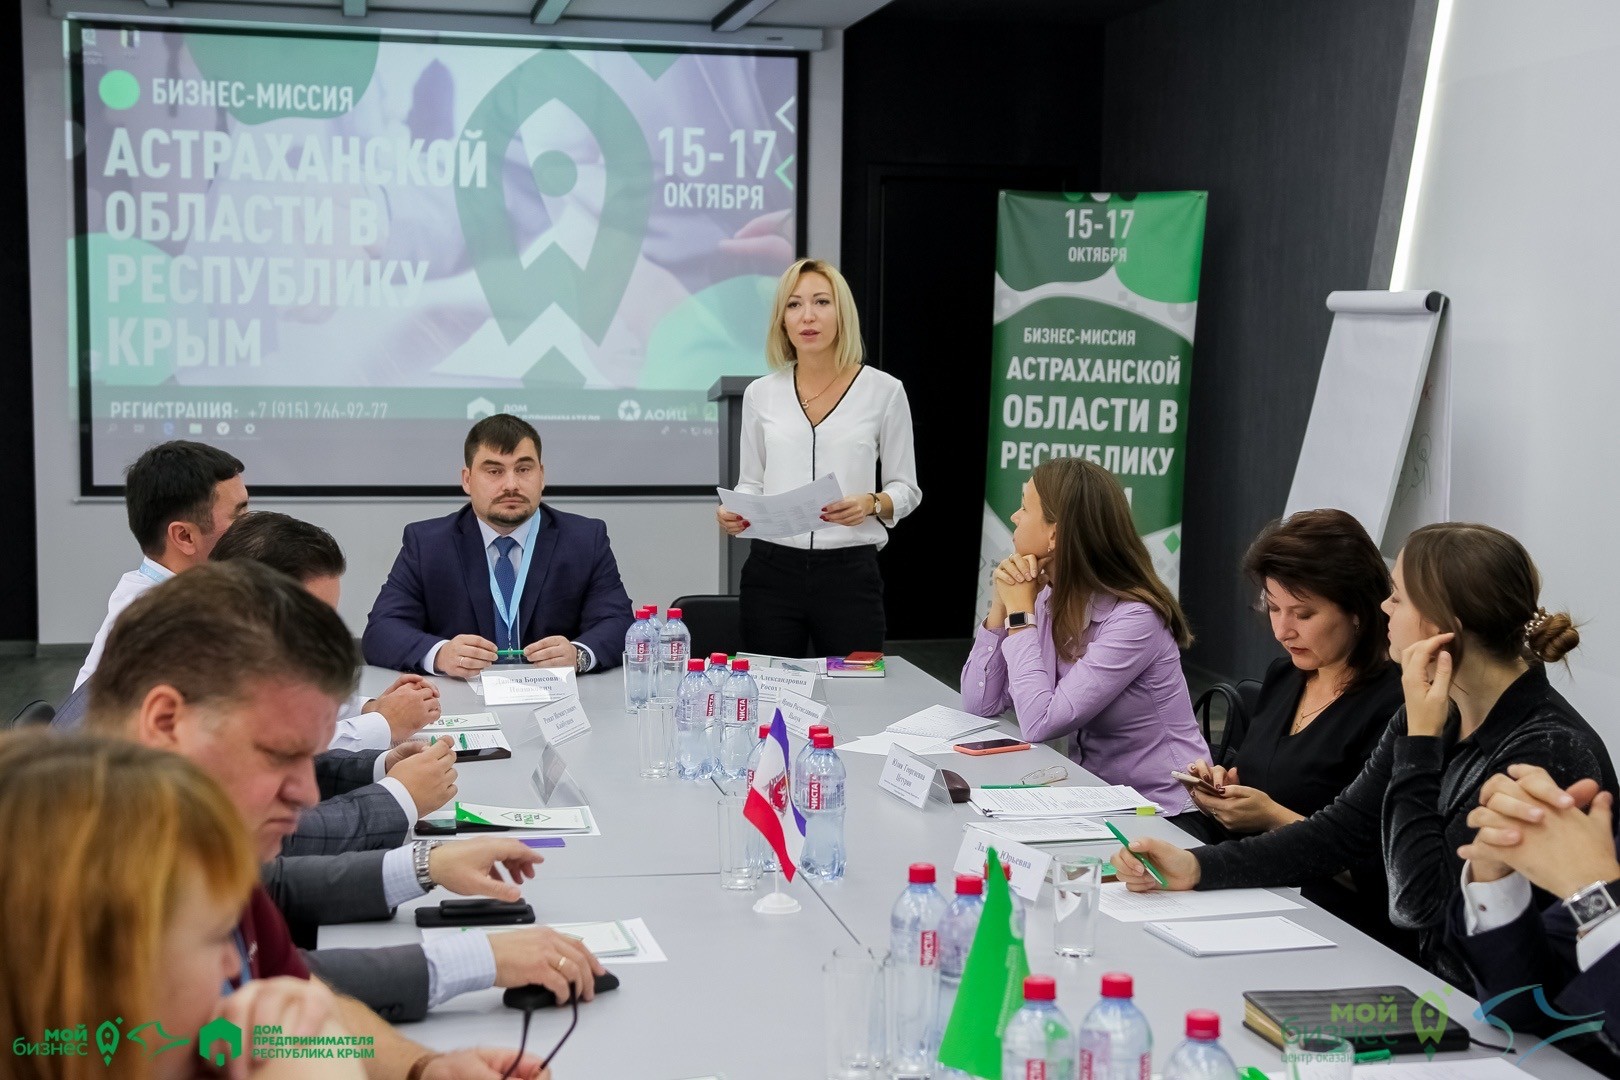 Бизнес-миссия из Астрахани – в гостях у Фонда поддержки предпринимательства Крыма